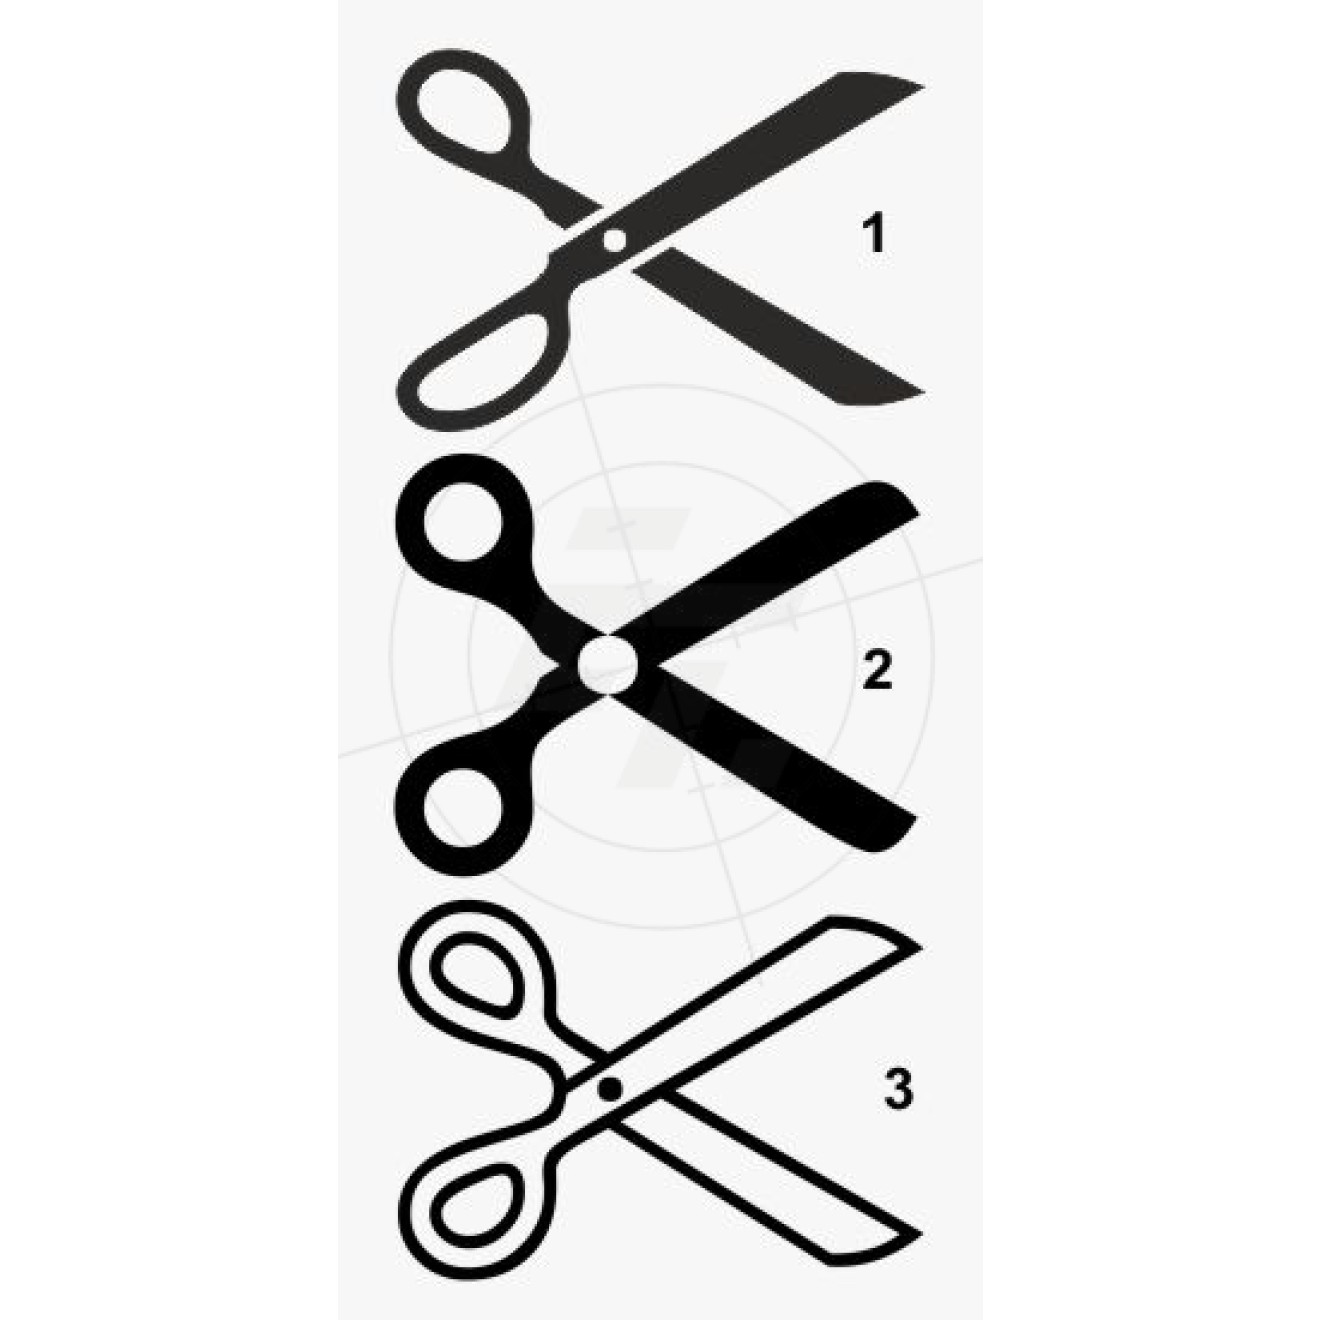 Scissors, tailor scissors, hairdressing scissors